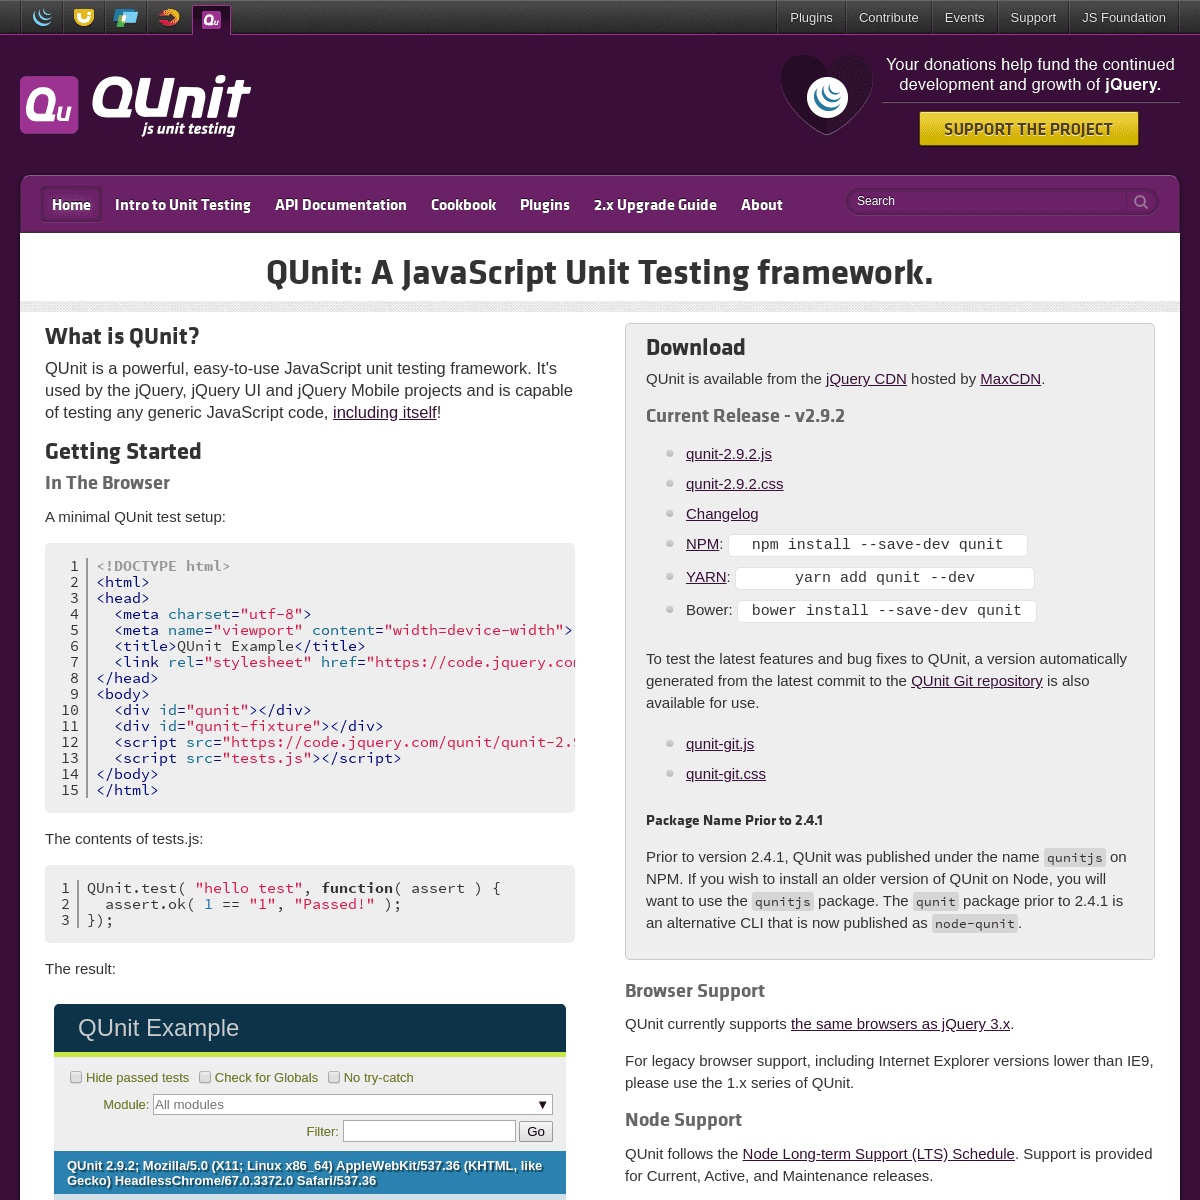 A complete backup of qunitjs.com